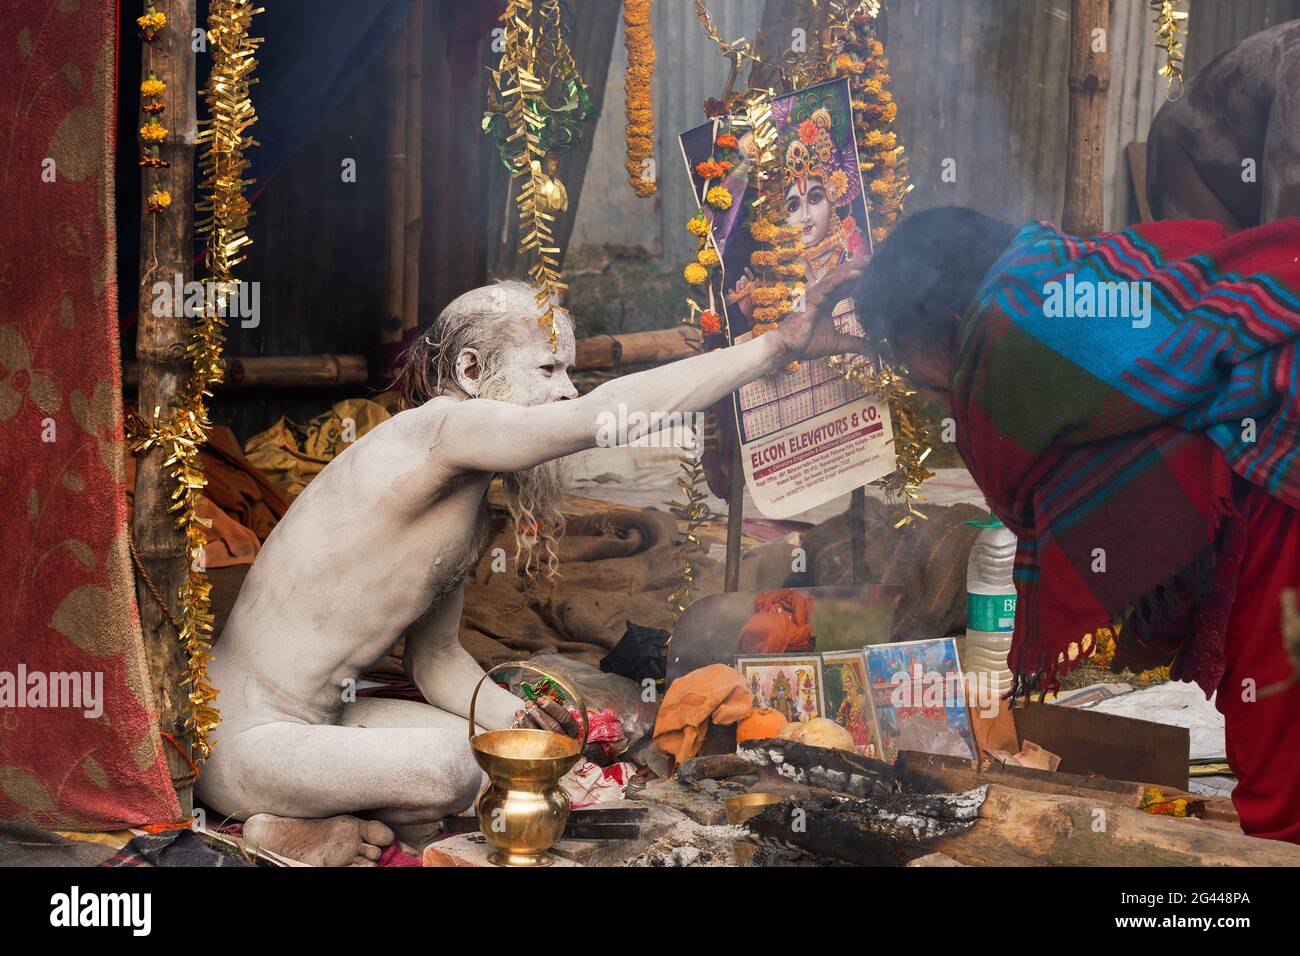 BABUGHAT, KALKUTTA, WESTBENGALEN / INDIEN - 11. JANUAR 2015 : Hindu-Sadhu mit weißer Asche auf Körper und Gesicht, die einen blauen, mit Sari bekleideten indischen Devoten segnet Stockfoto